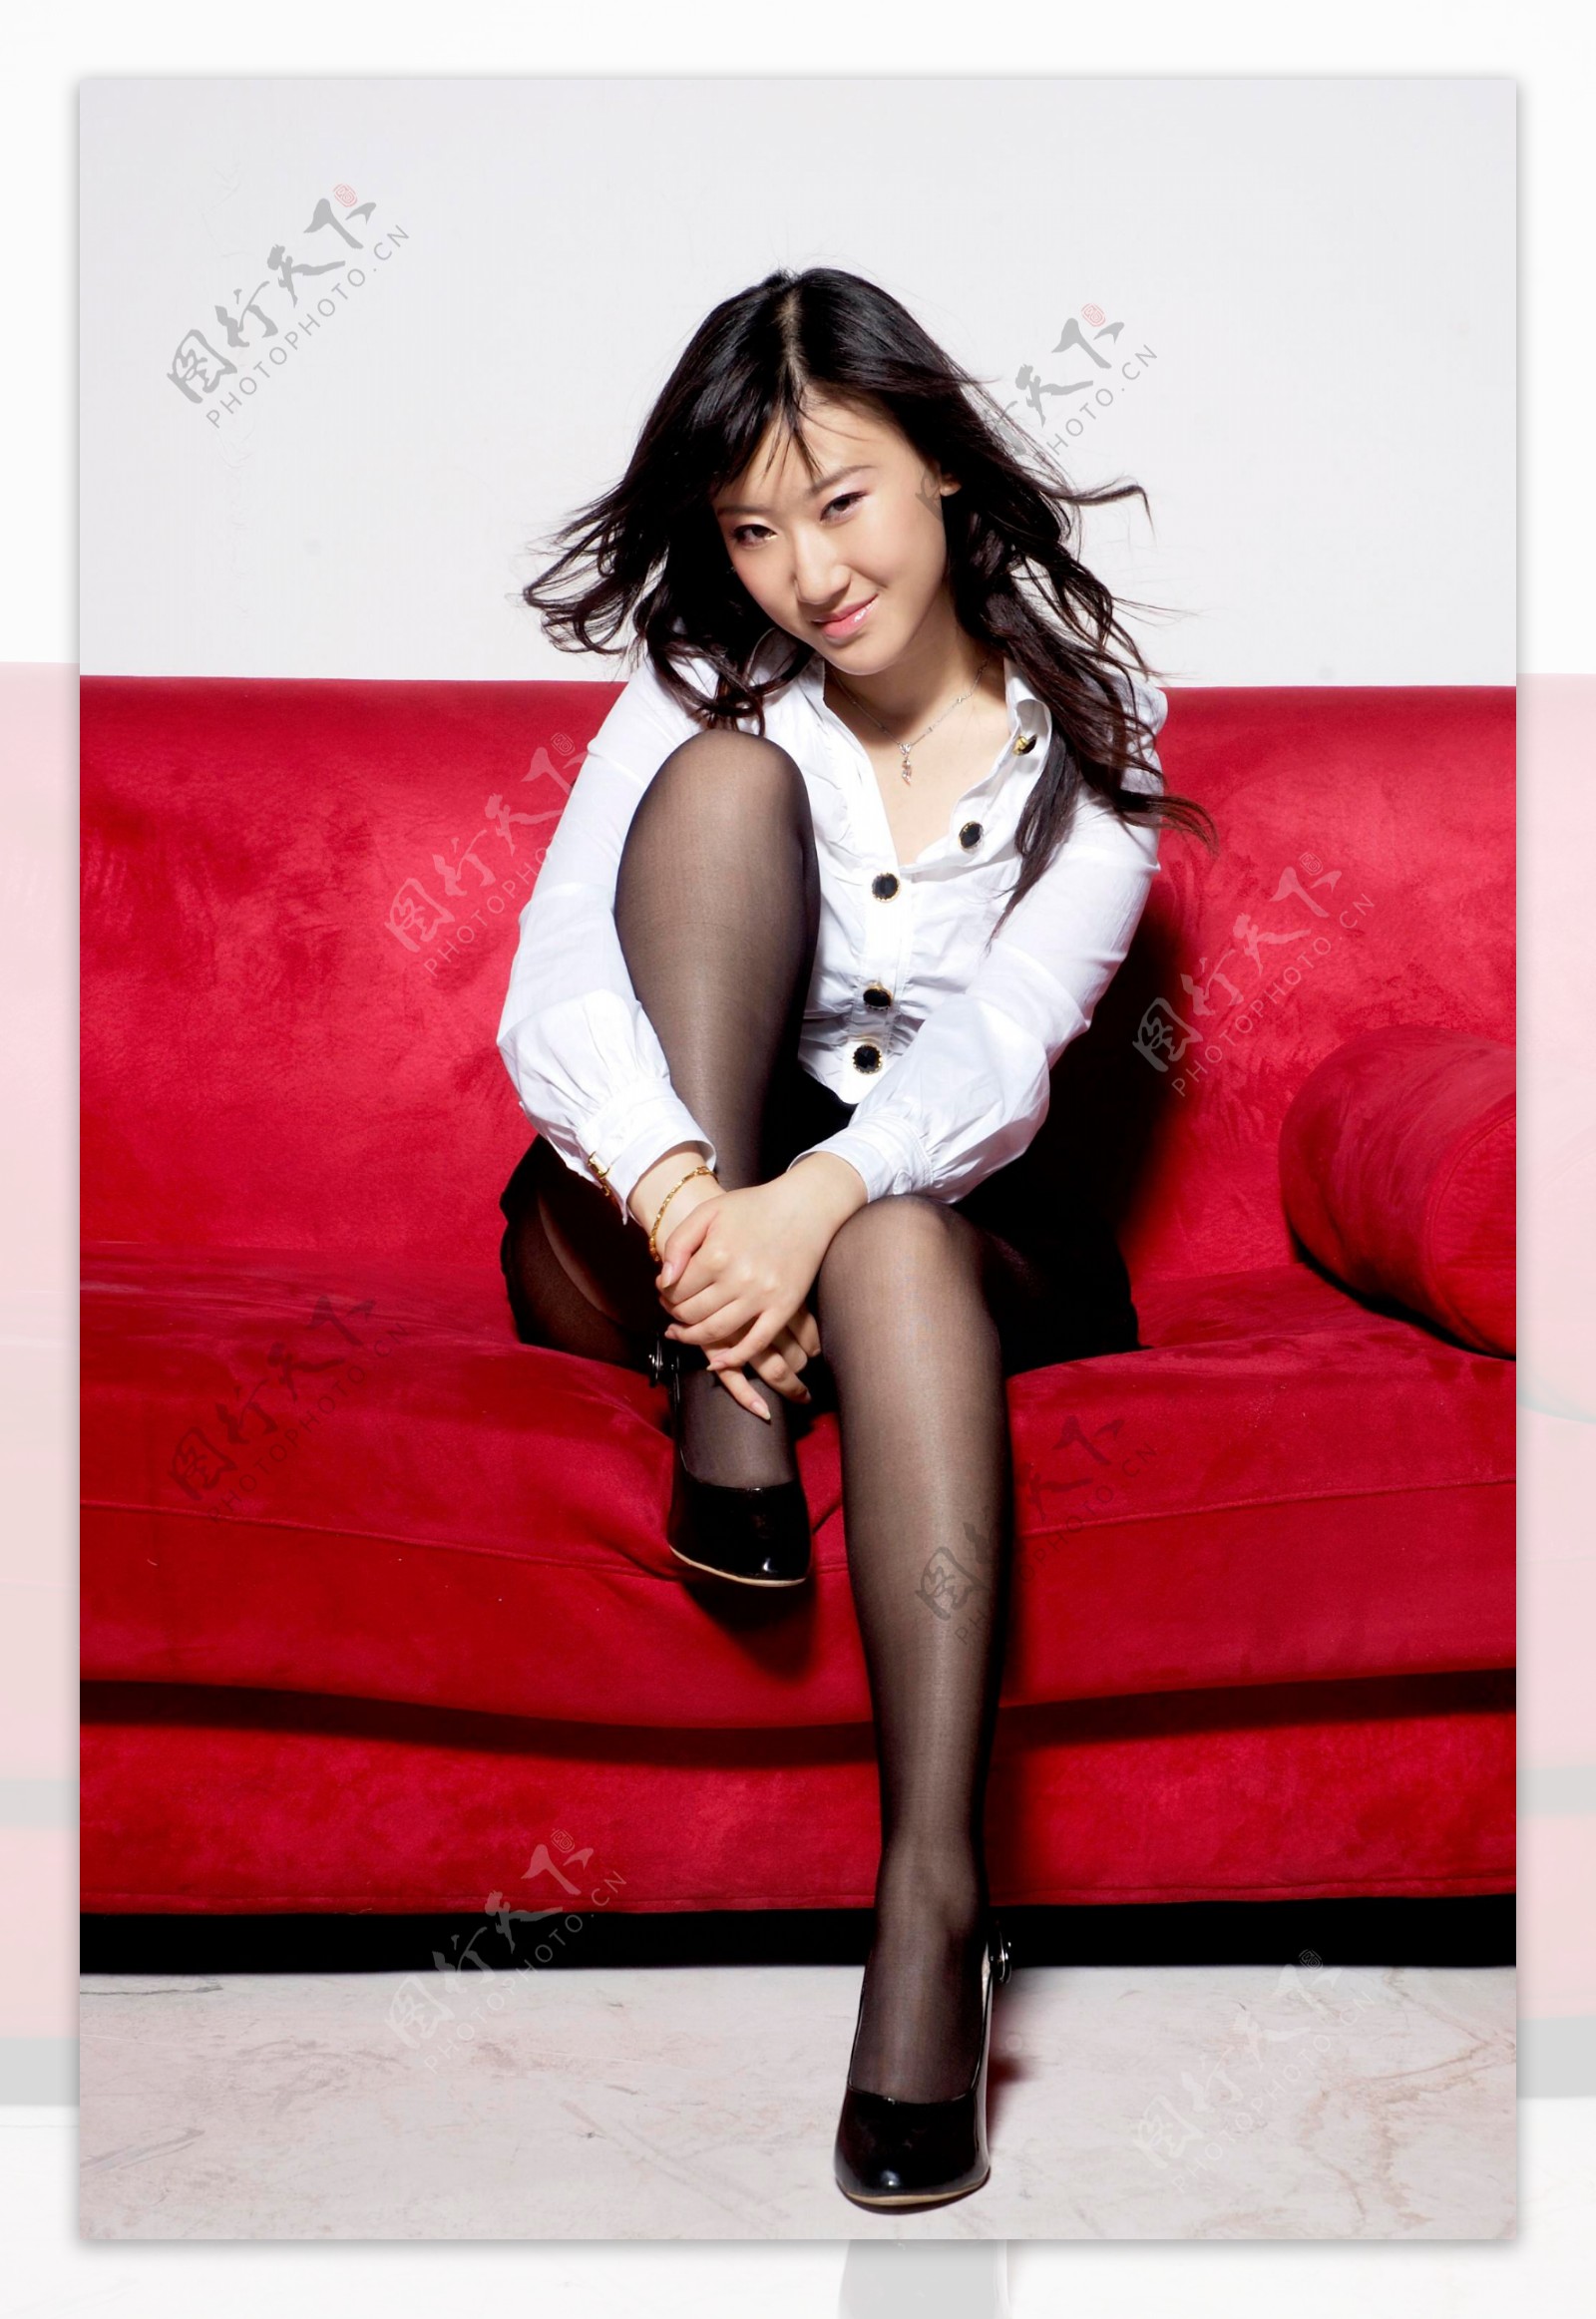 坐在红色沙发上的时尚美女图片